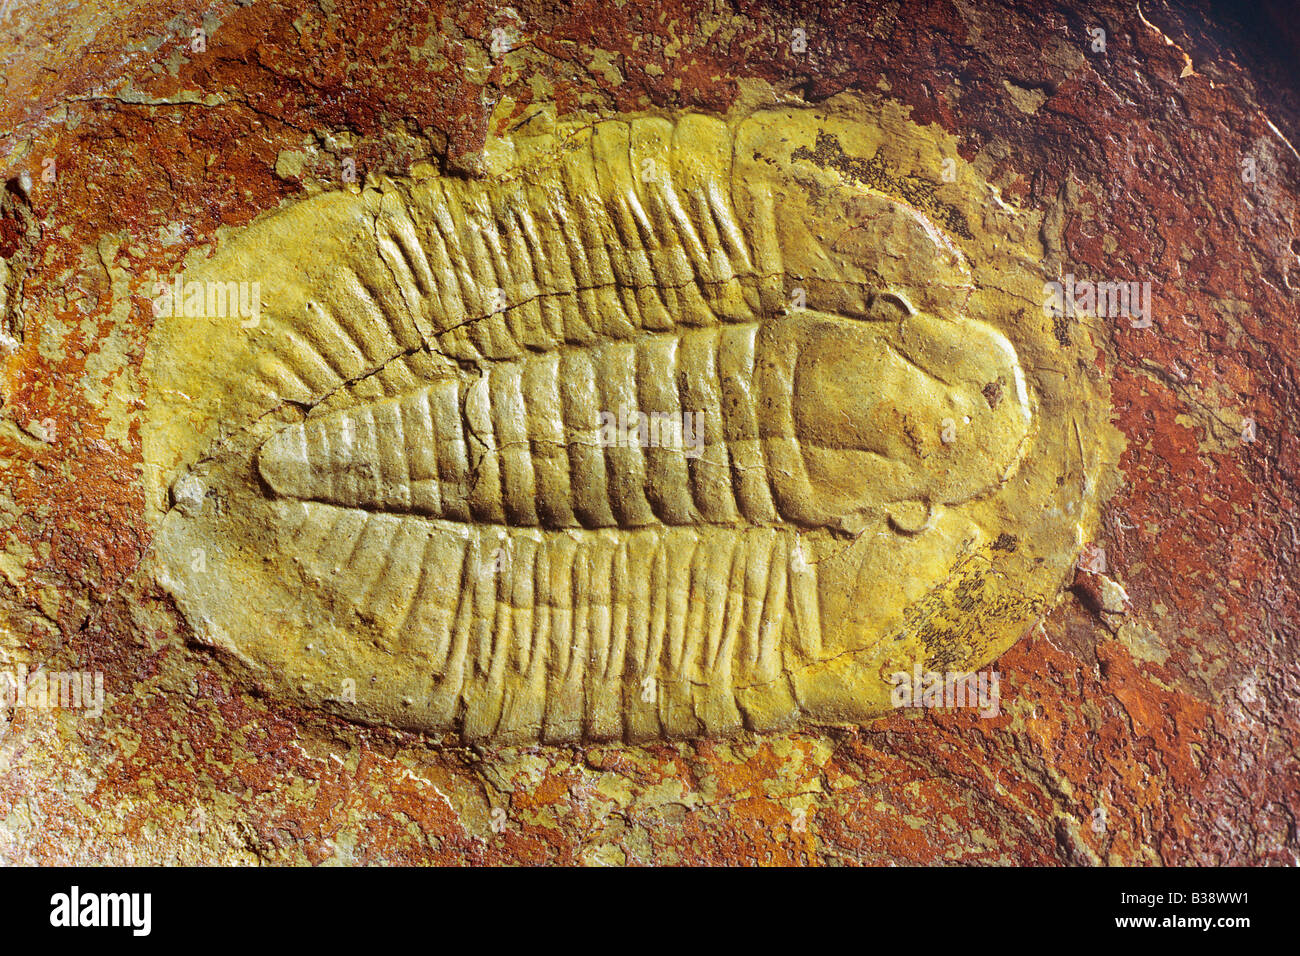 Cambrian trilobite Niobella homfrayi smithi Stock Photo